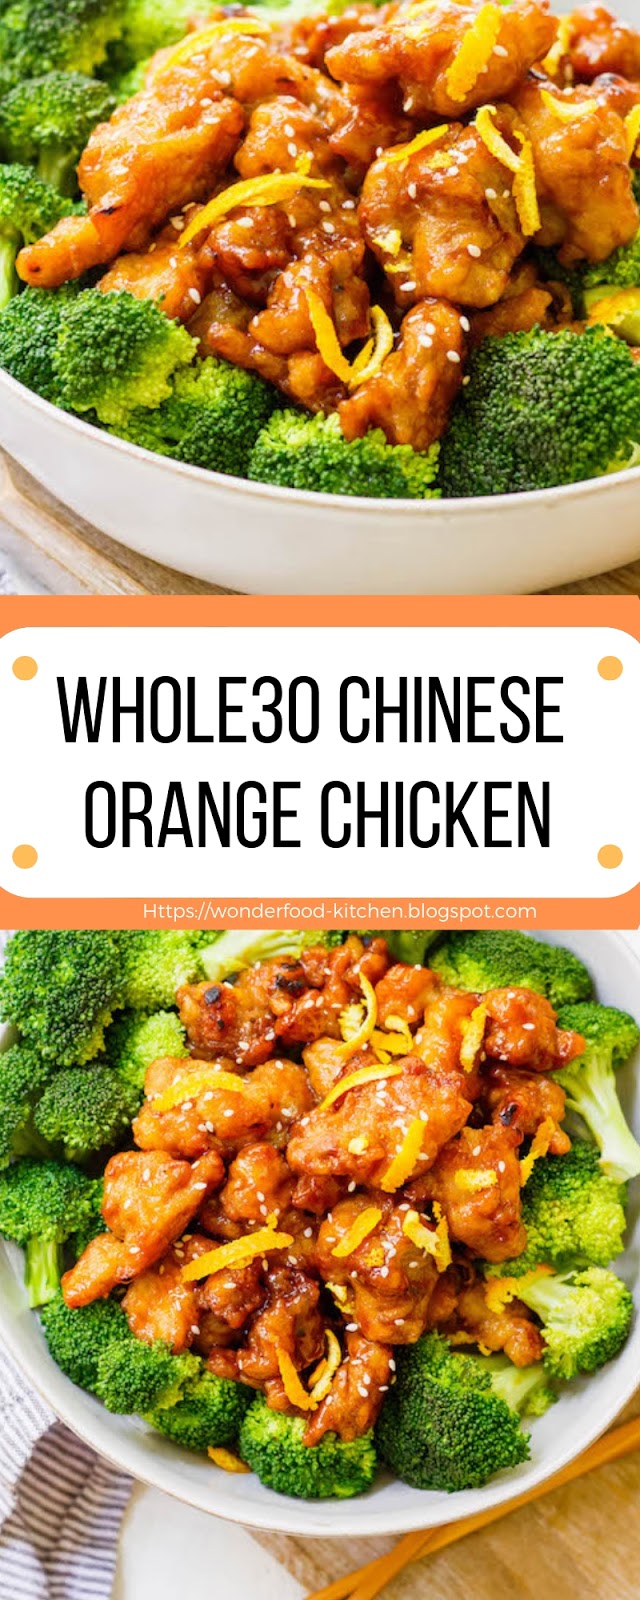 Whole30 Chinese Orange Chicken - WONDERFOOD KITCHEN